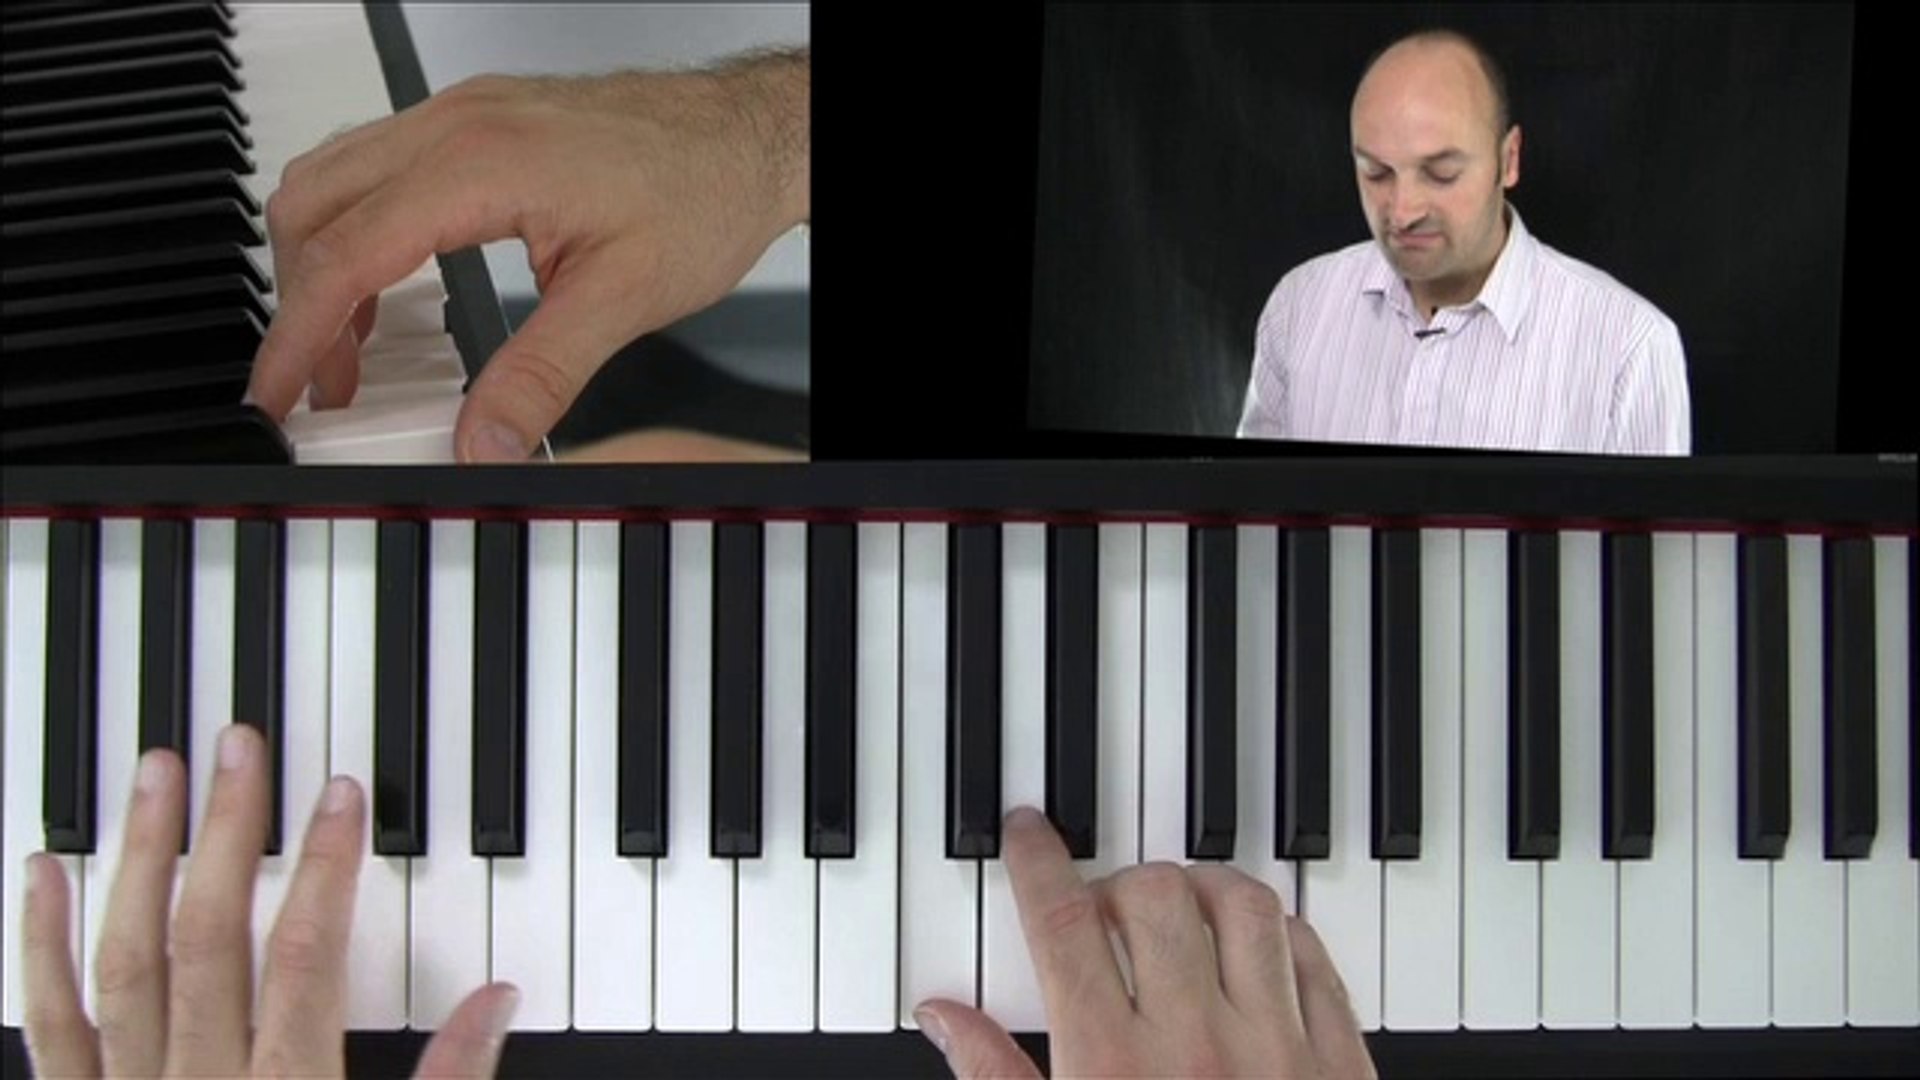 Klavier lernen - Arpeggios am Klavier lernen - was ist ein Arpeggio? -  Akkorde verstehen - video Dailymotion